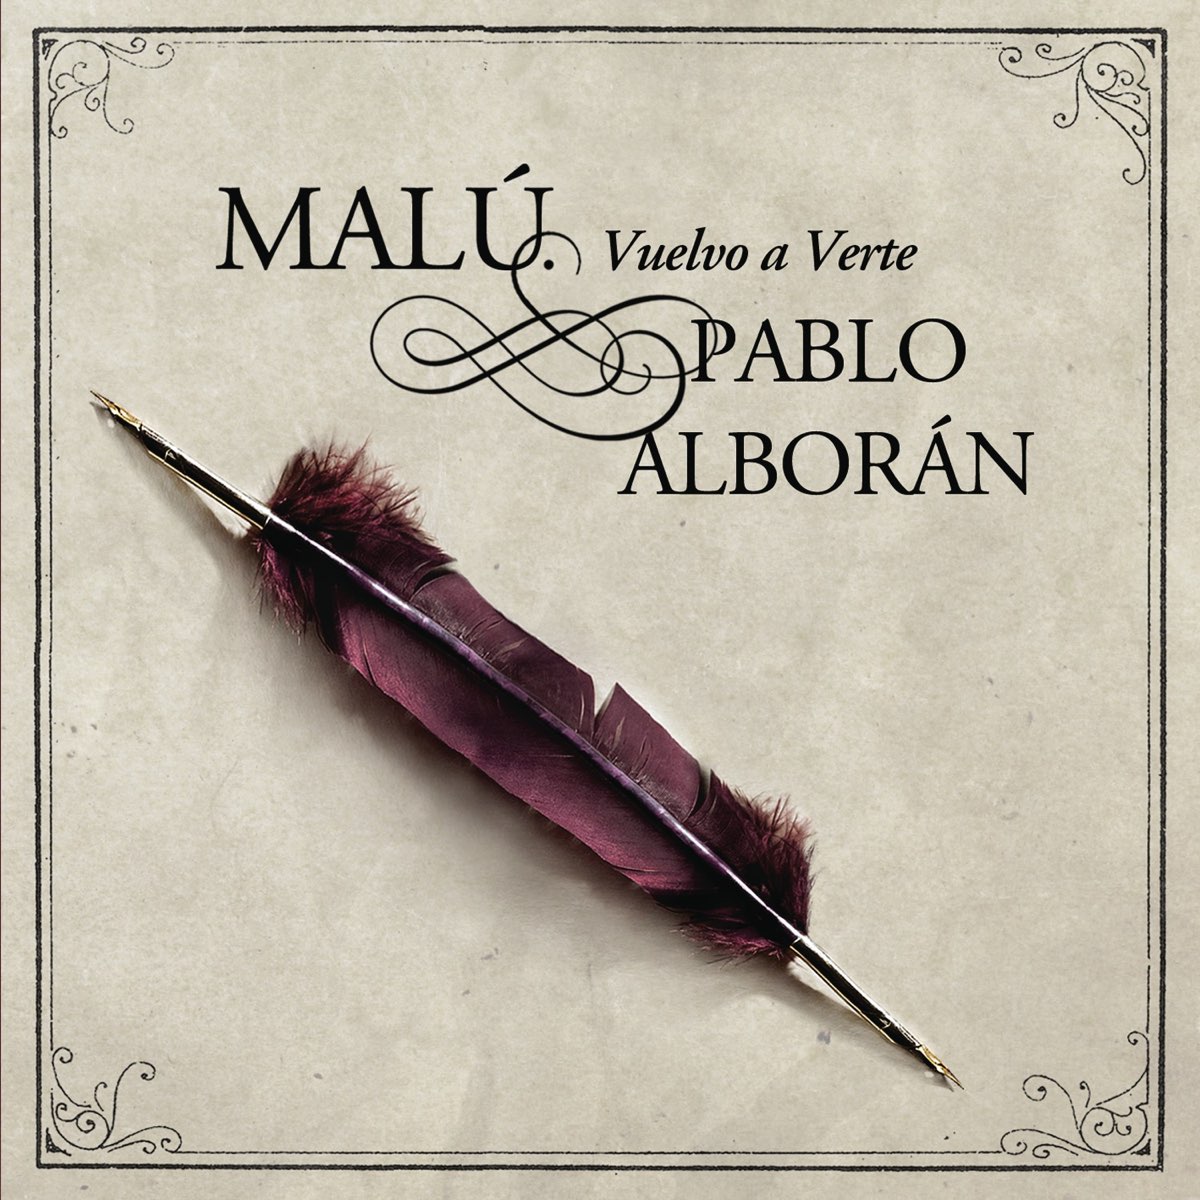 Malú & Pablo Alborán Vuelvo a Verte cover artwork